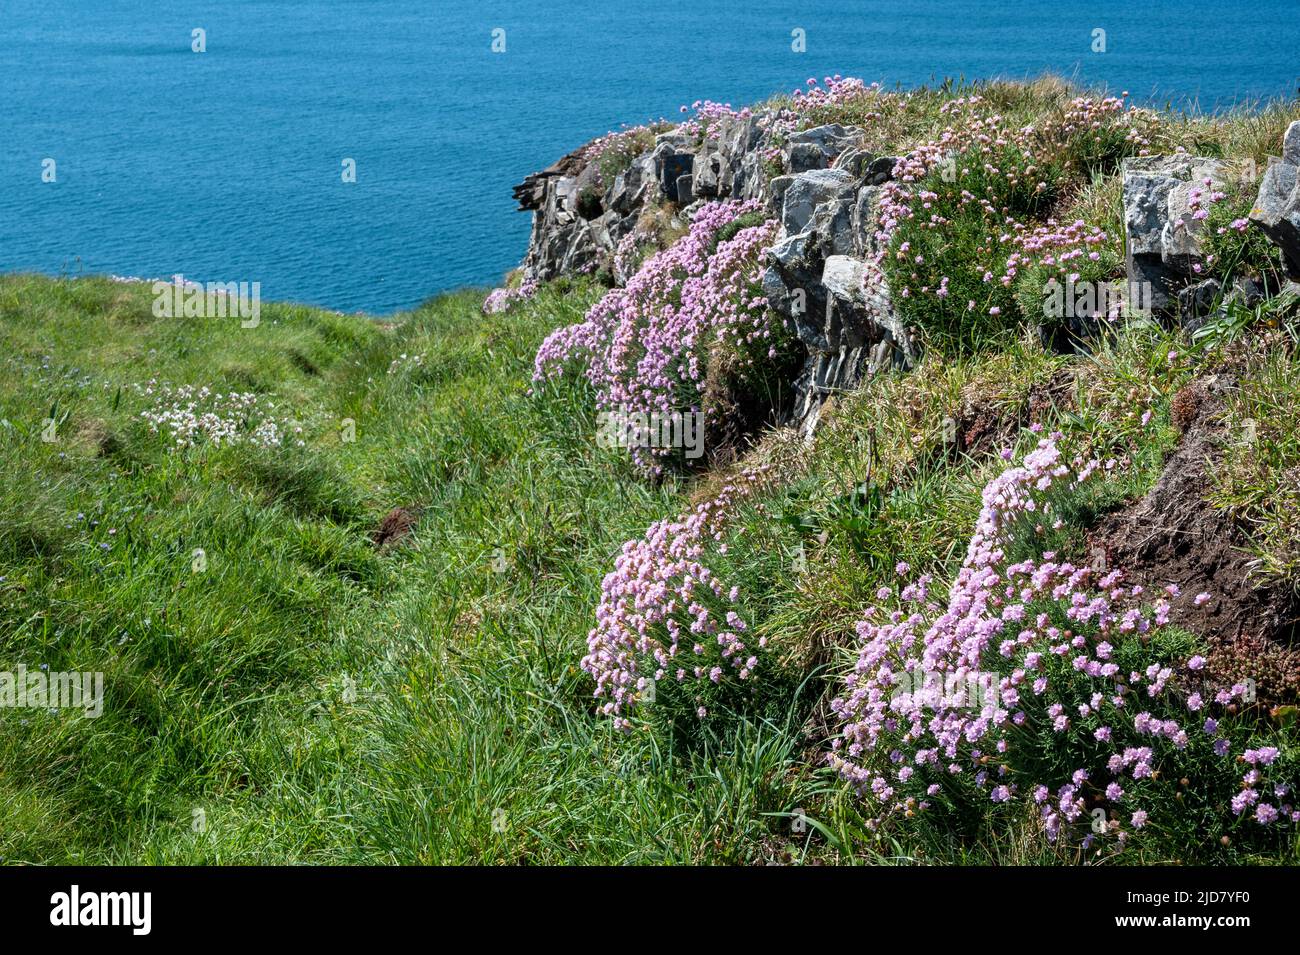 Des marais de roses marines (Armeria Maritima) au premier plan et au loin de la mer turquoise. South West Coast Path, North Cornwall. Banque D'Images